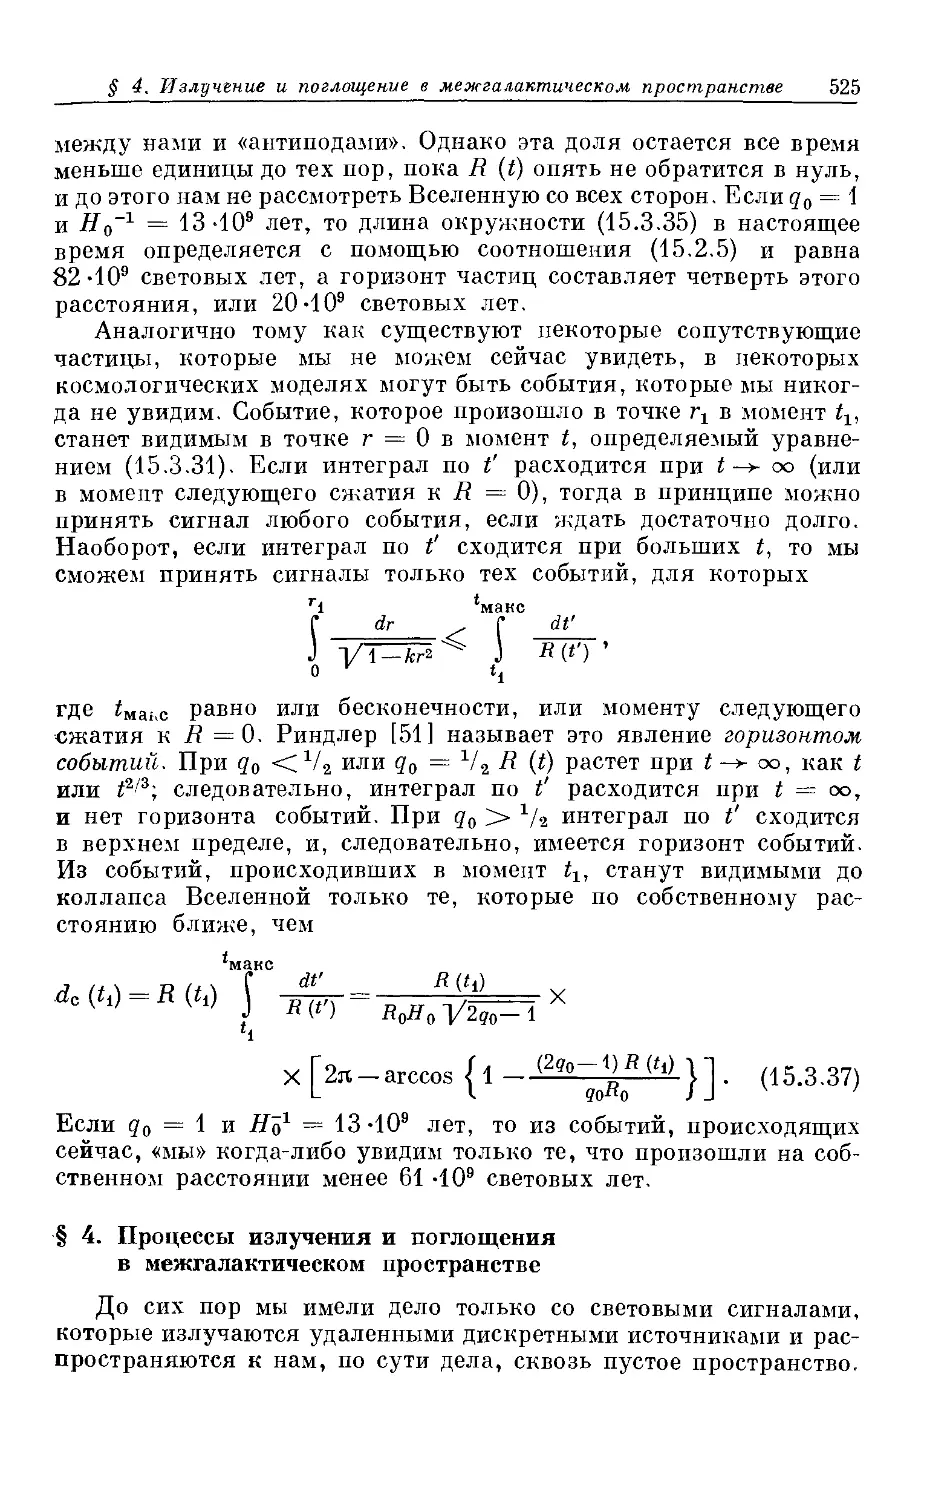 § 4. Процессы излучения и поглощения в межгалактическом пространстве